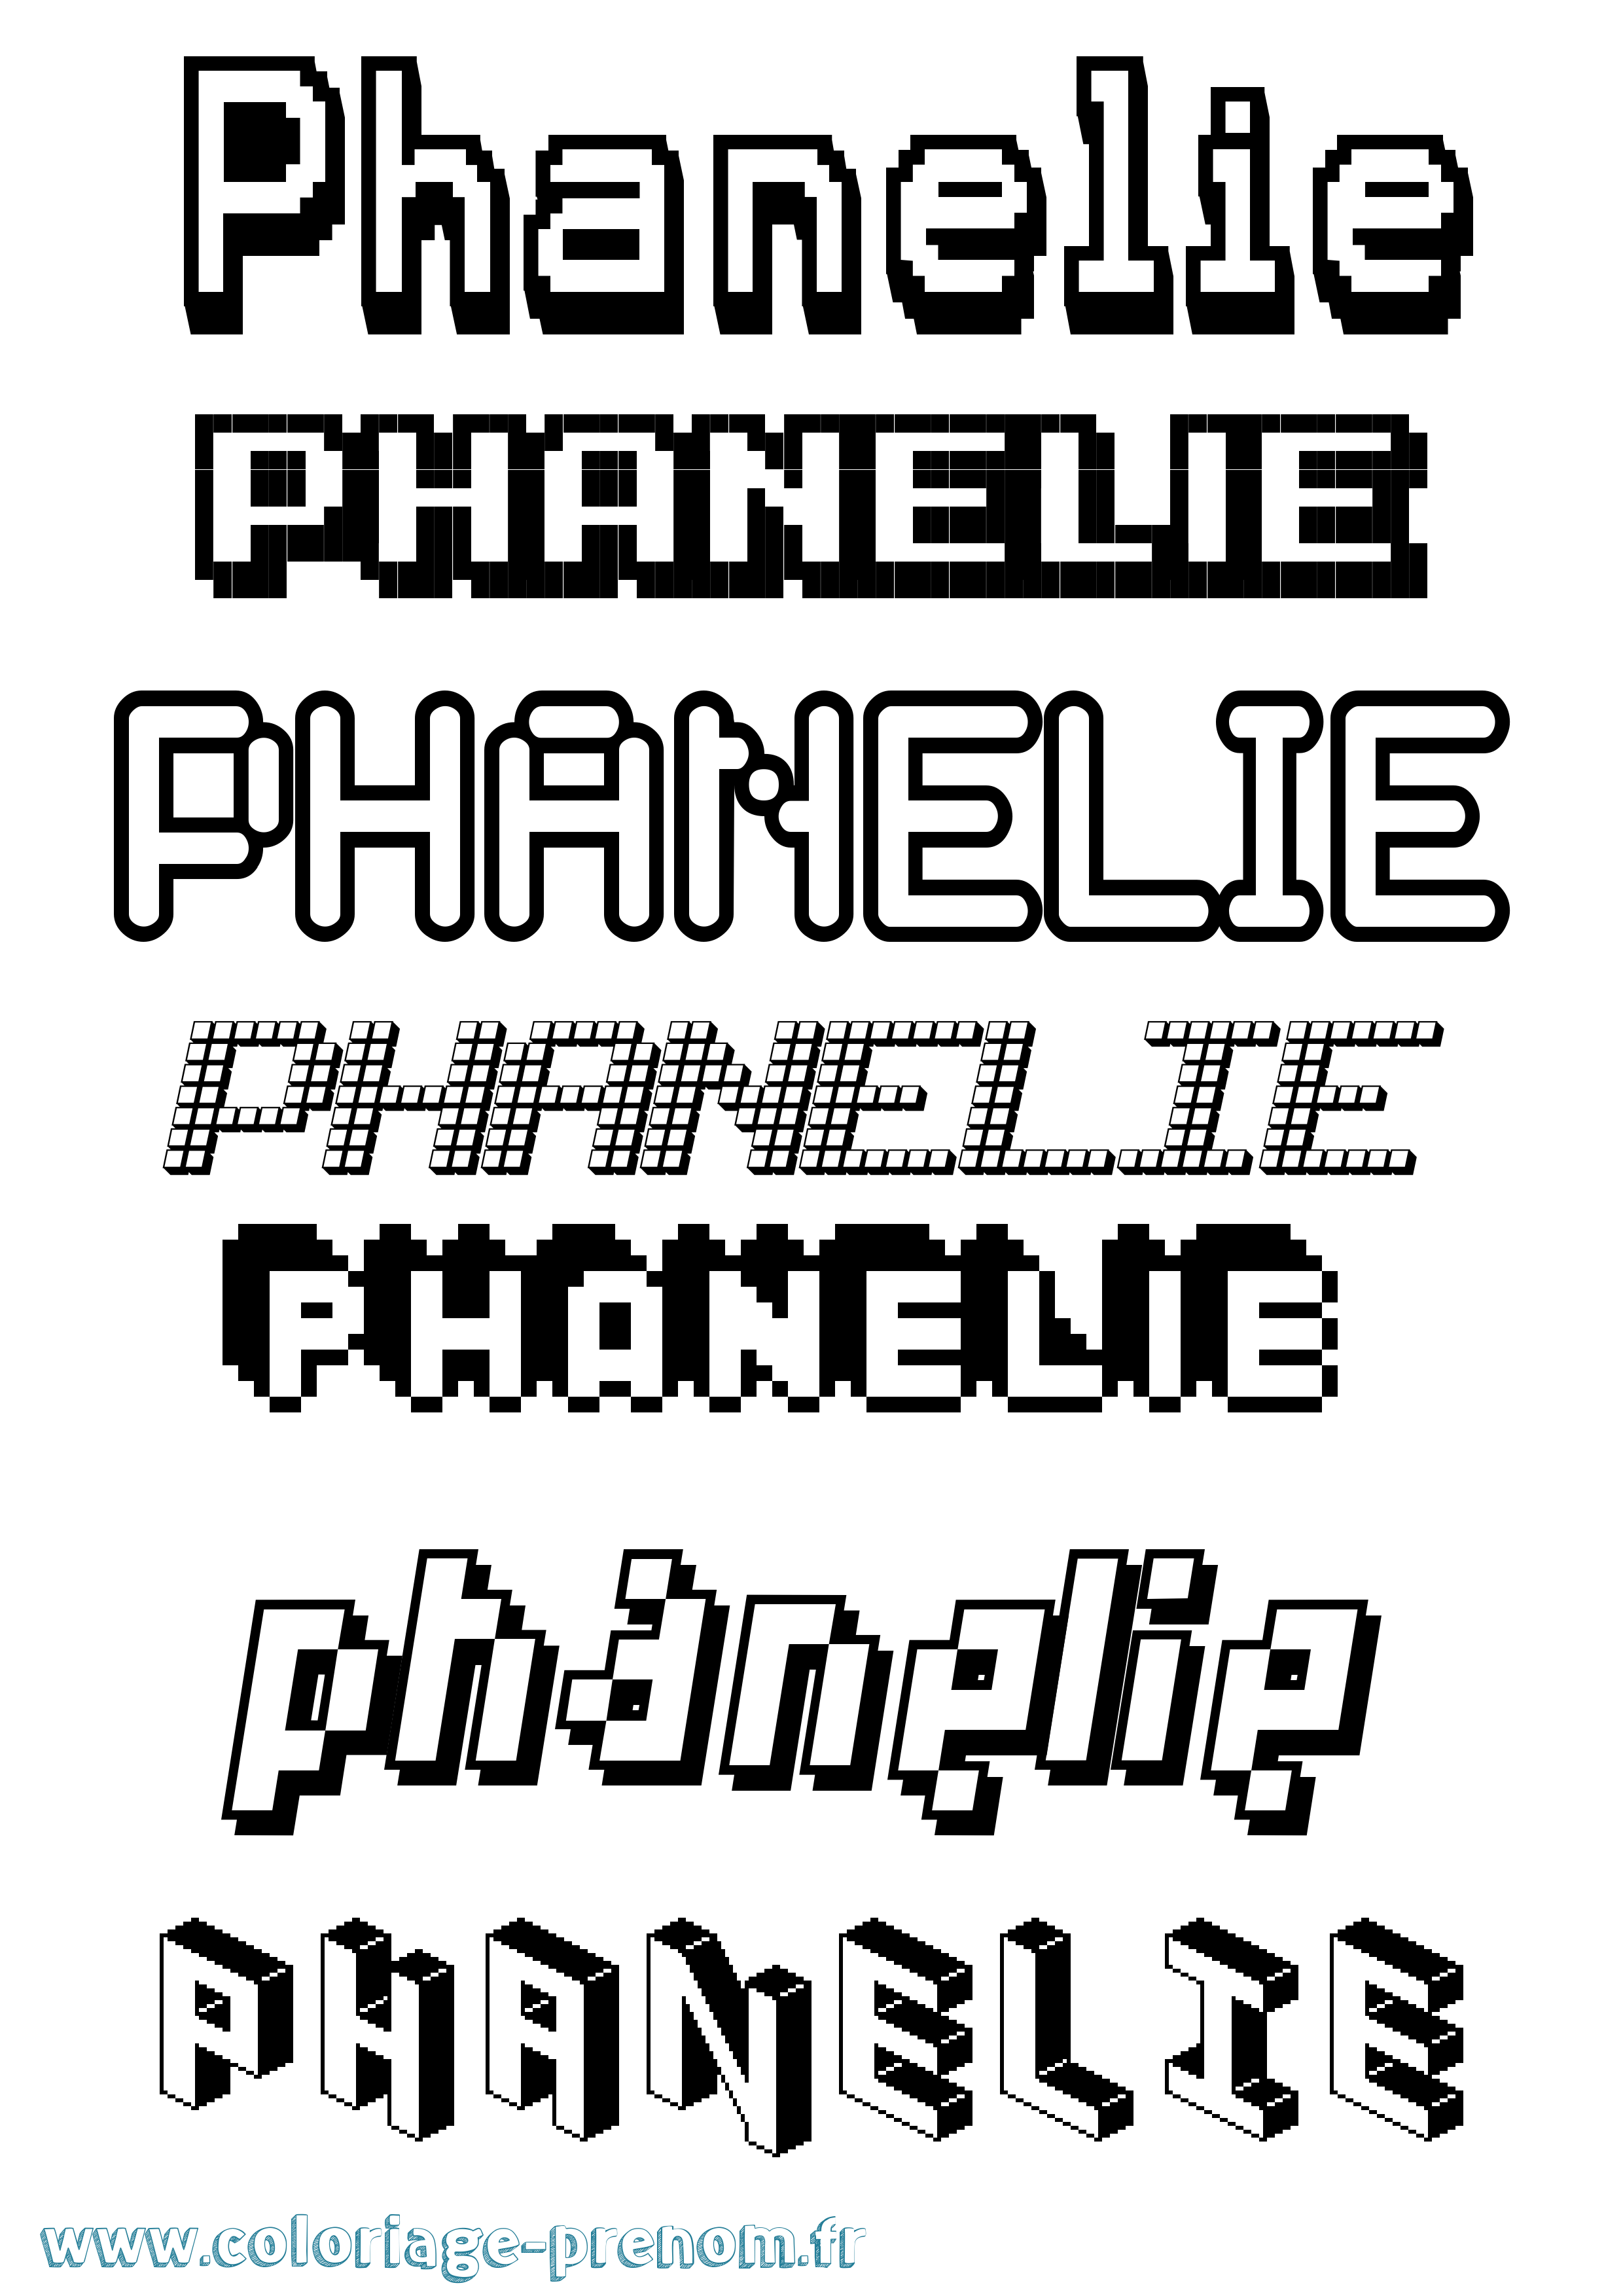 Coloriage prénom Phanelie Pixel